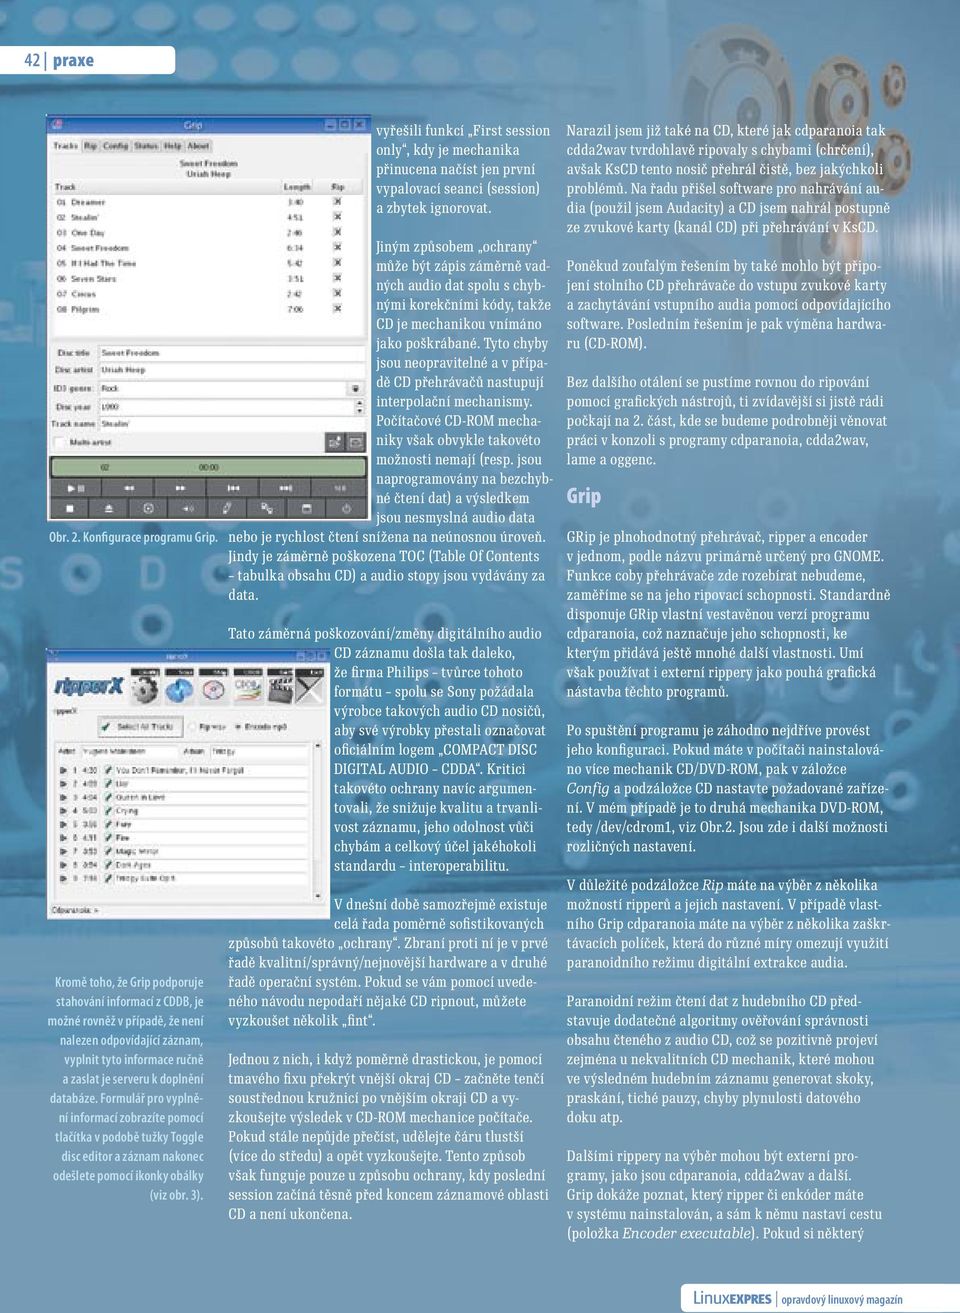 Formulář pro vyplnění informací zobrazíte pomocí tlačítka v podobě tužky Toggle disc editor a záznam nakonec odešlete pomocí ikonky obálky (viz obr. 3).